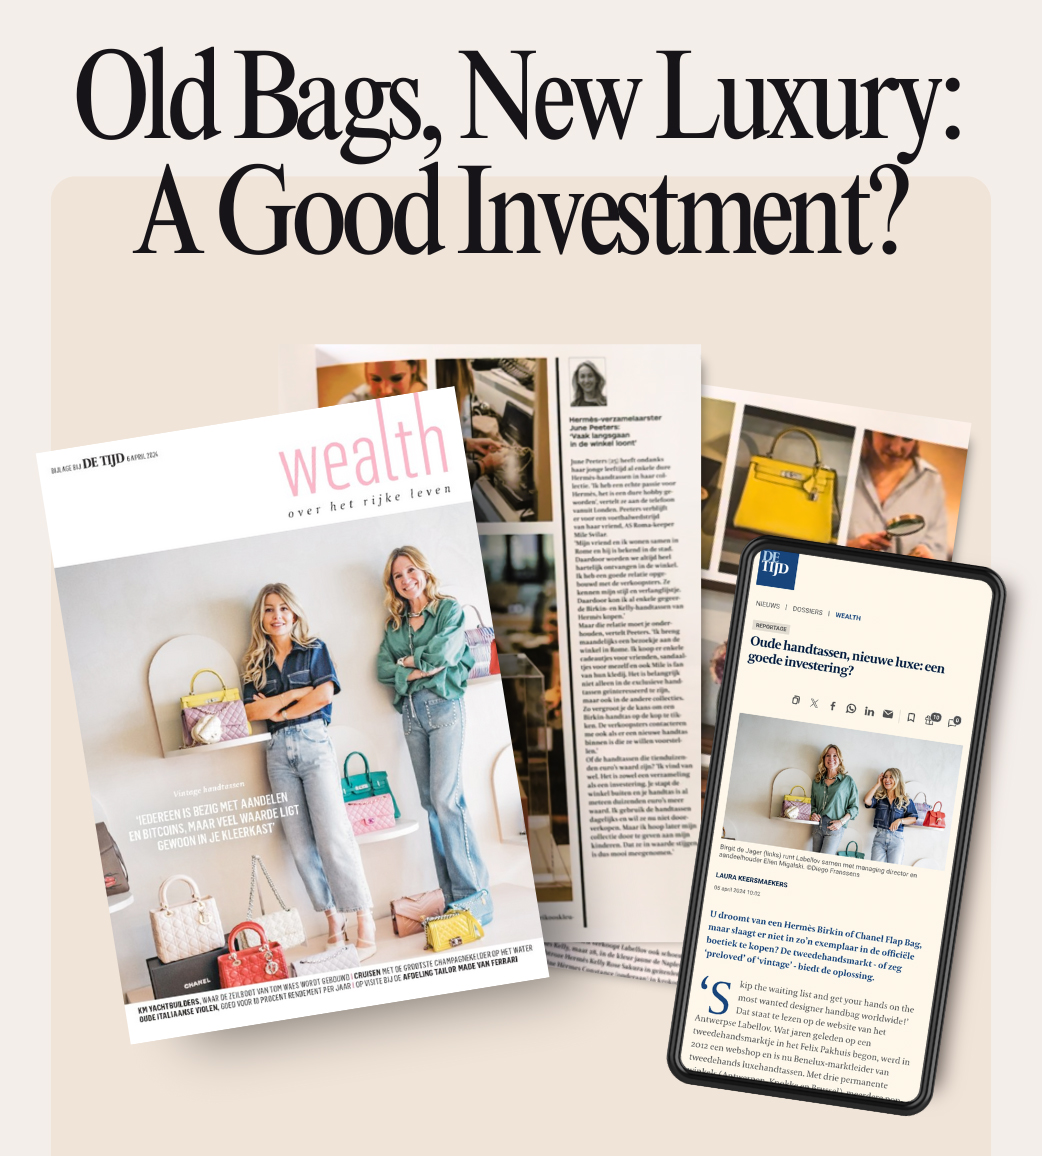 De Tijd: Old Bags, New Luxury?